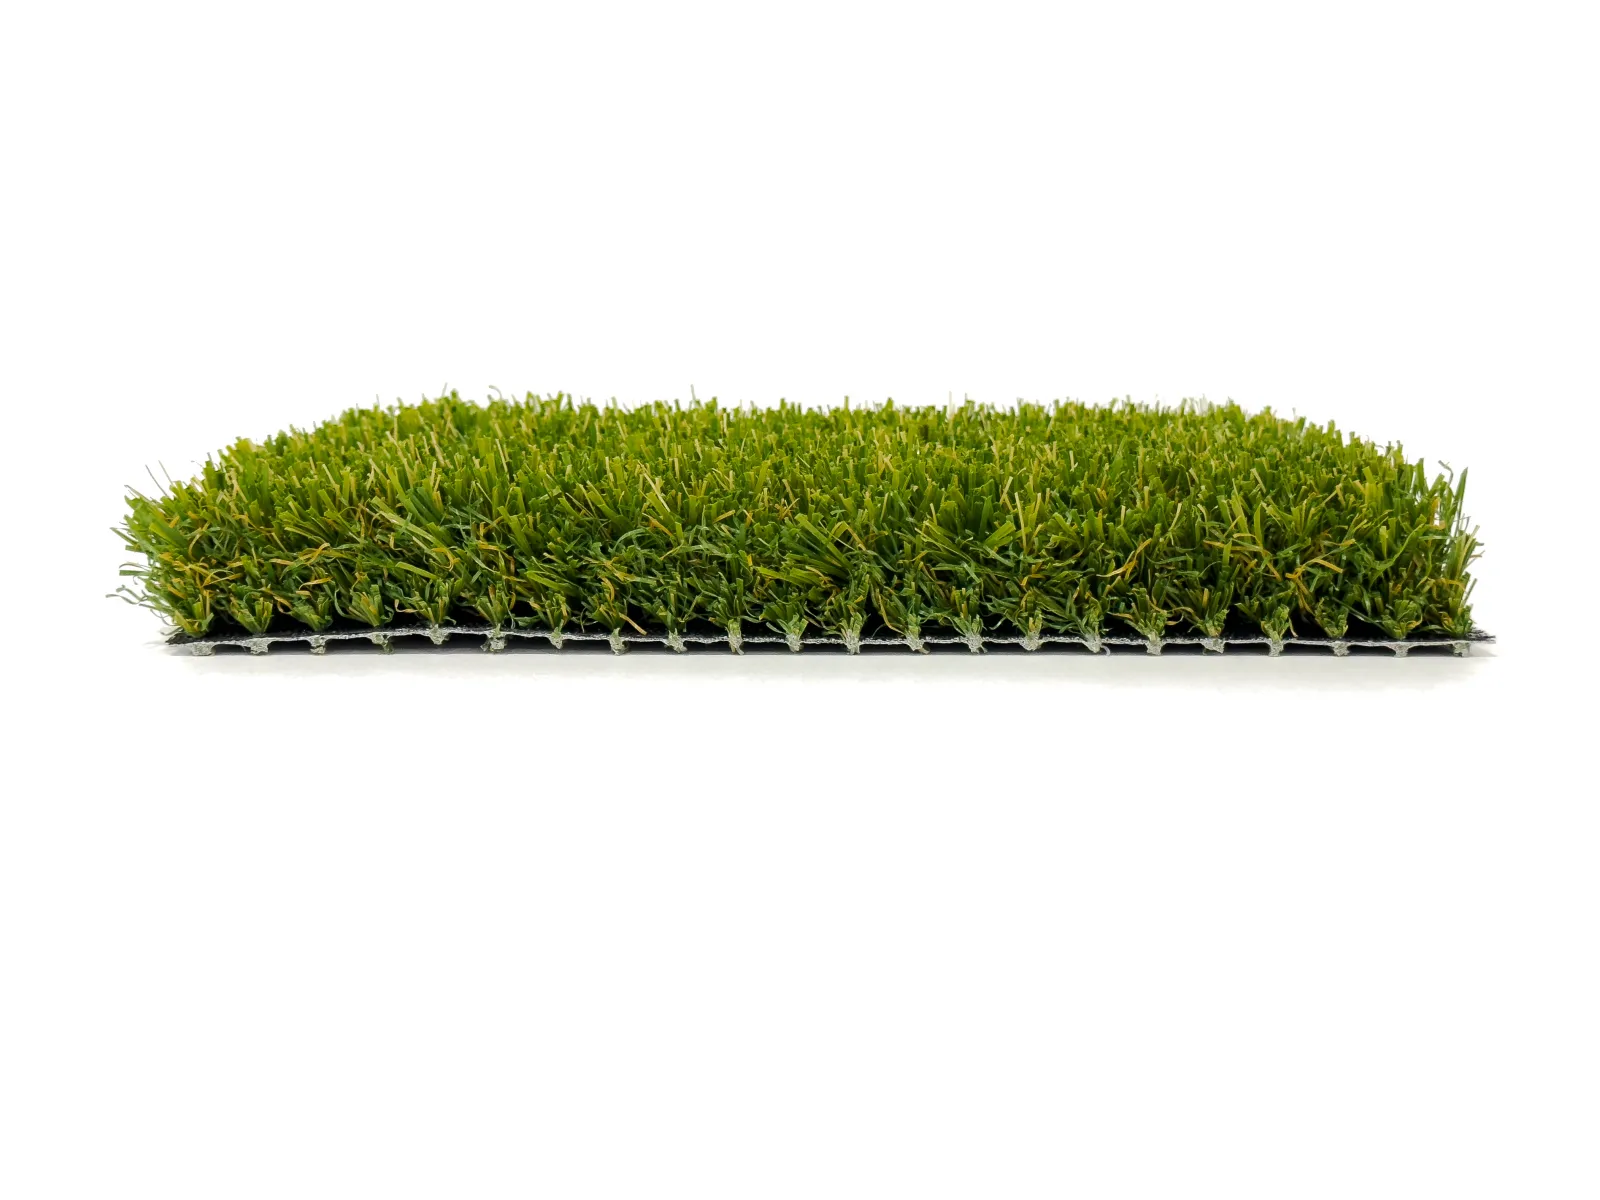 a pile of green grass